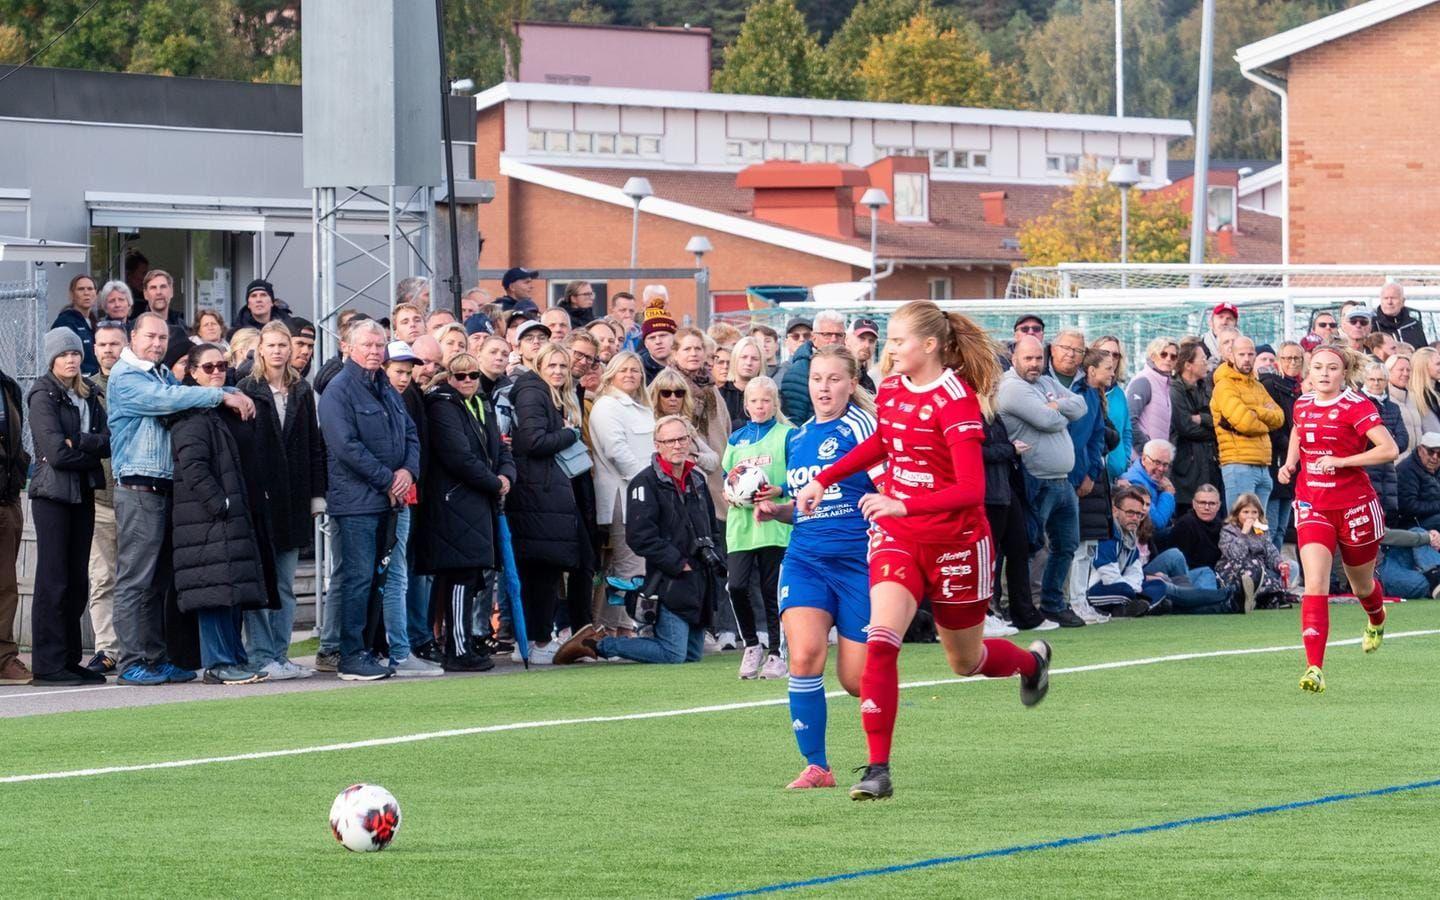 Vallens IF vann seriefinalen i Bohustrean i fotboll mot Stenungsunds IF med 3–0 inför hela 632 personer.